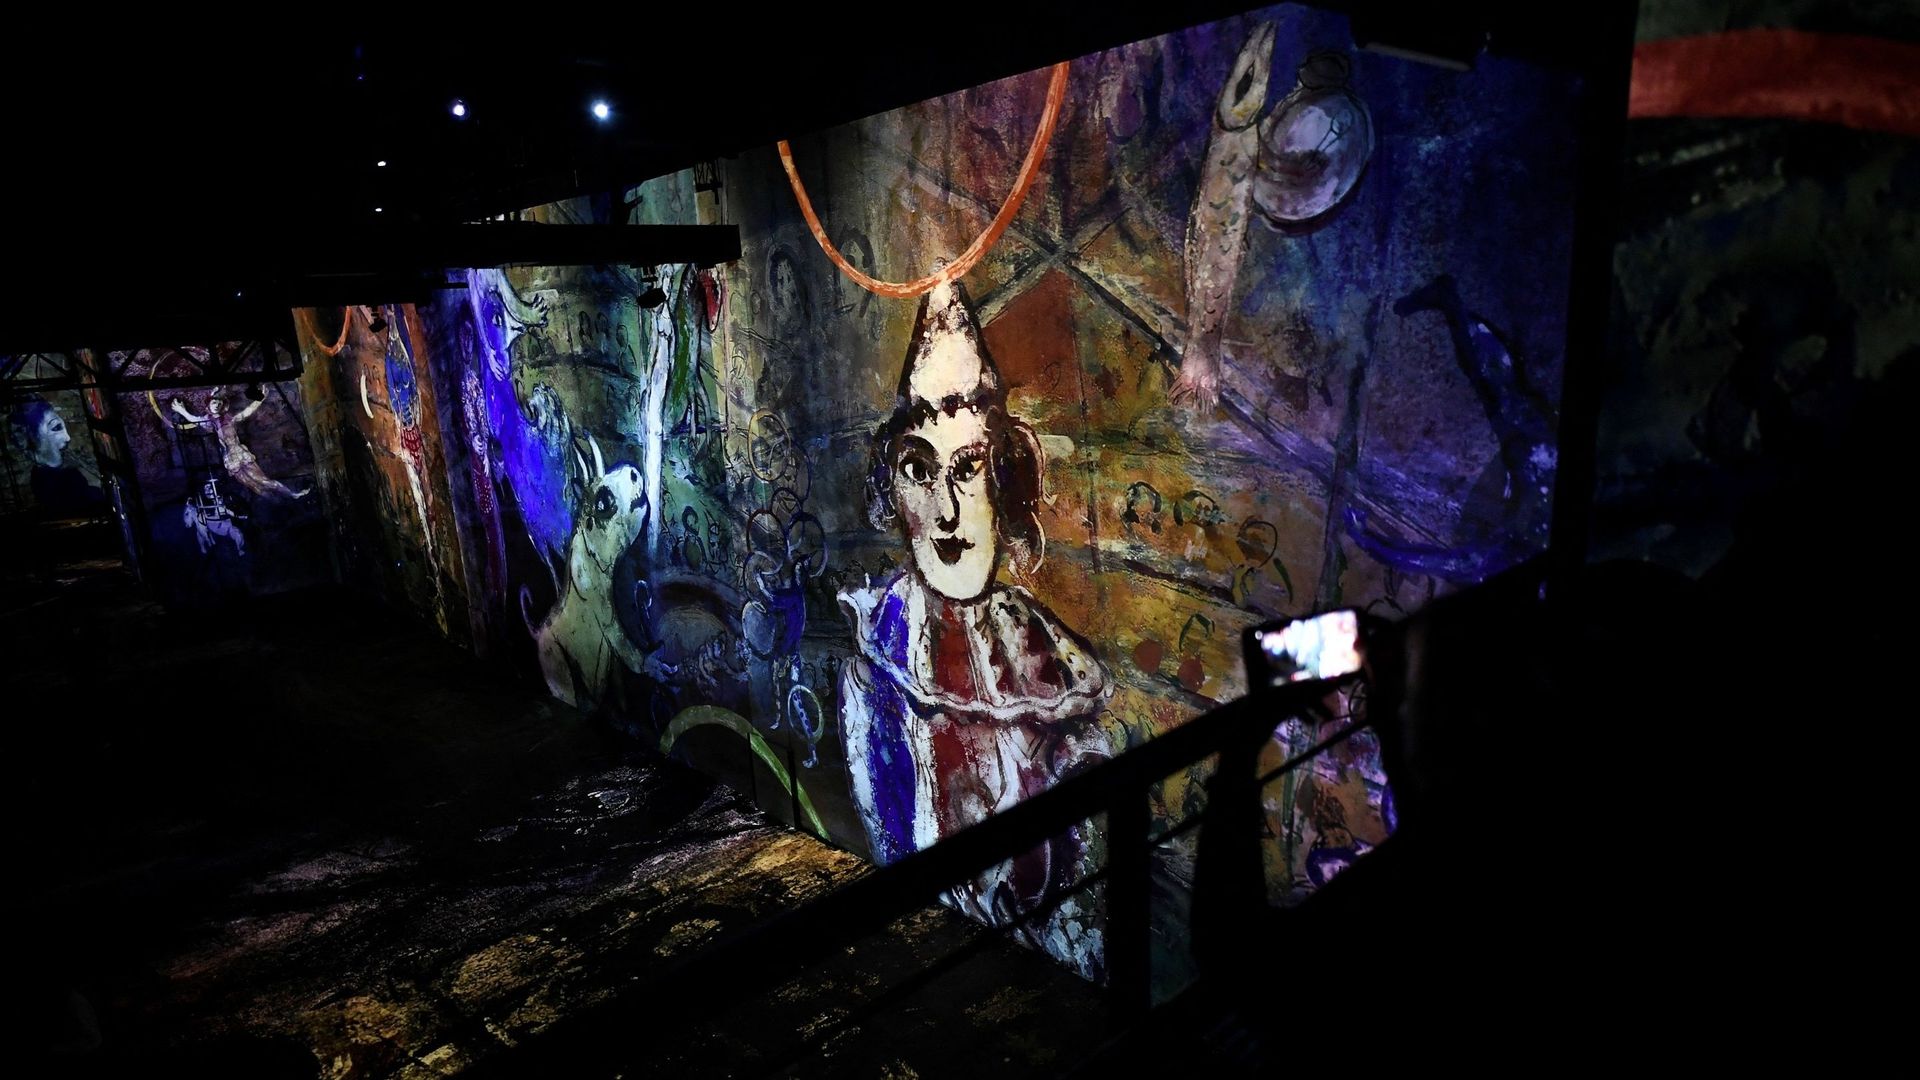 Après les tournesols de Vincent van Gogh ou l’or et les motifs décoratifs de Gustav Klimt, c’est au tour de l’univers onirique de Marc Chagall de prendre vie à l’Atelier des lumières de Paris.